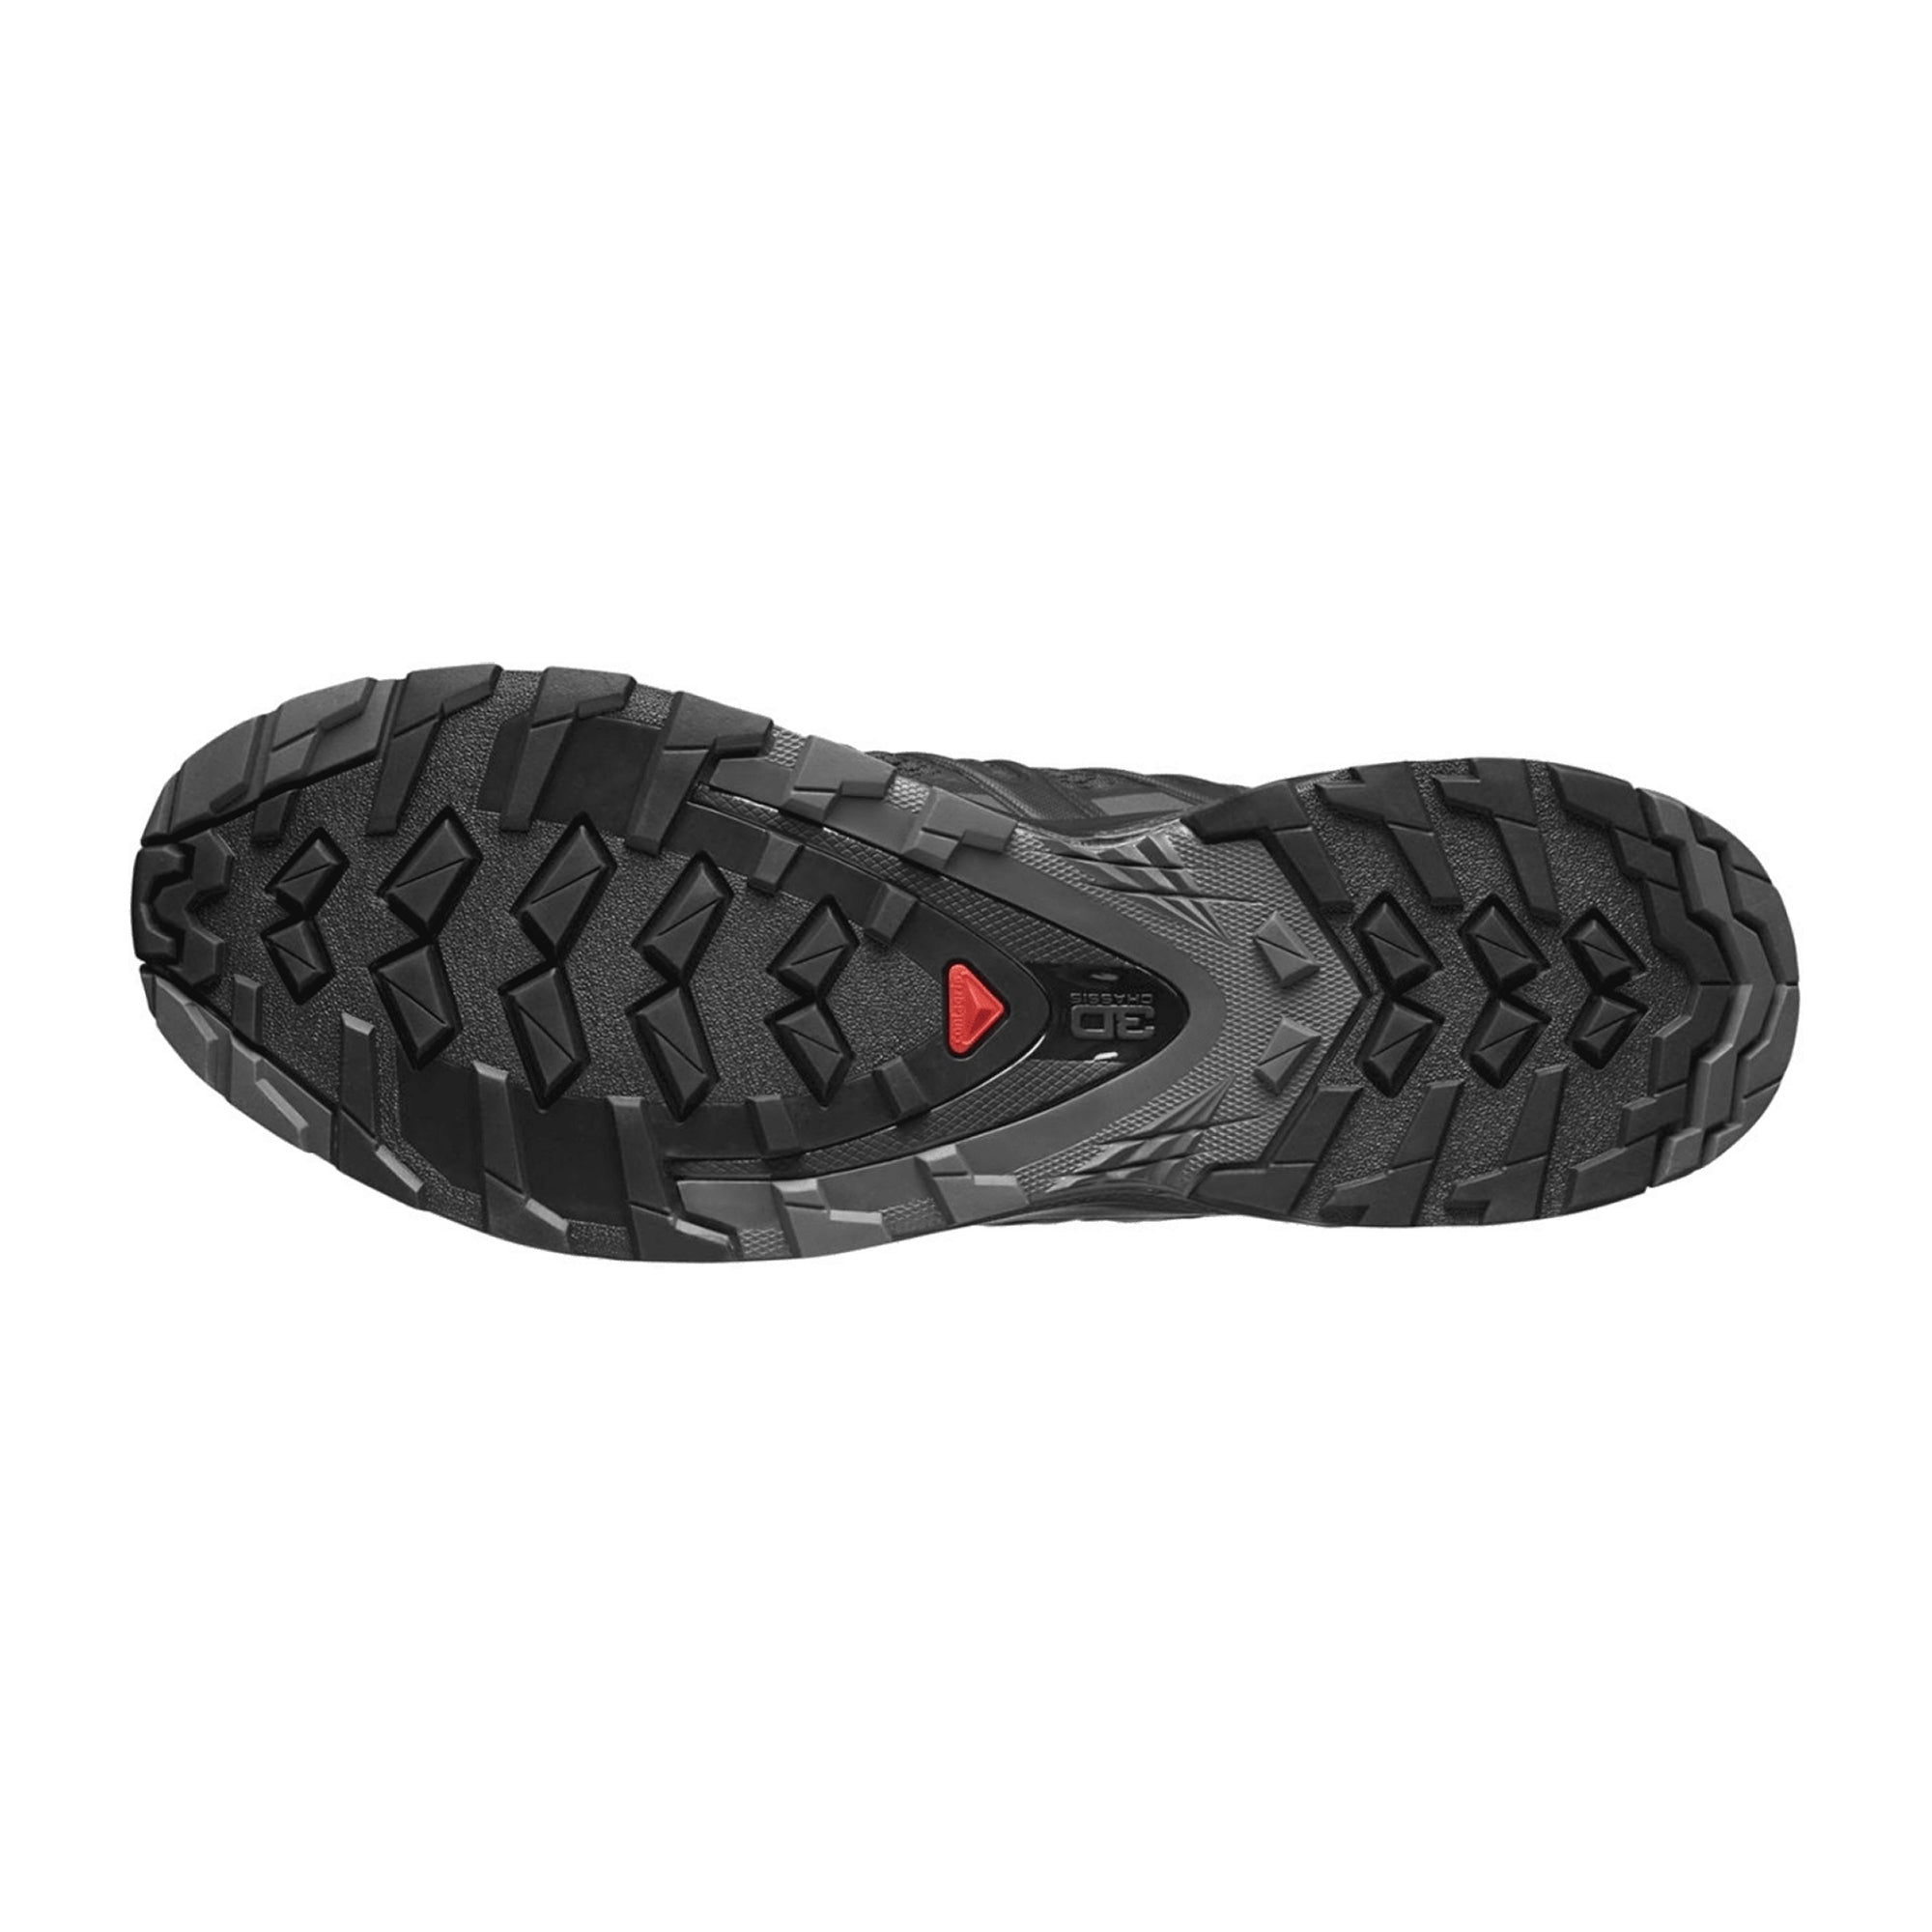 Salomon XA Pro 3D v8 for men, black, shoes